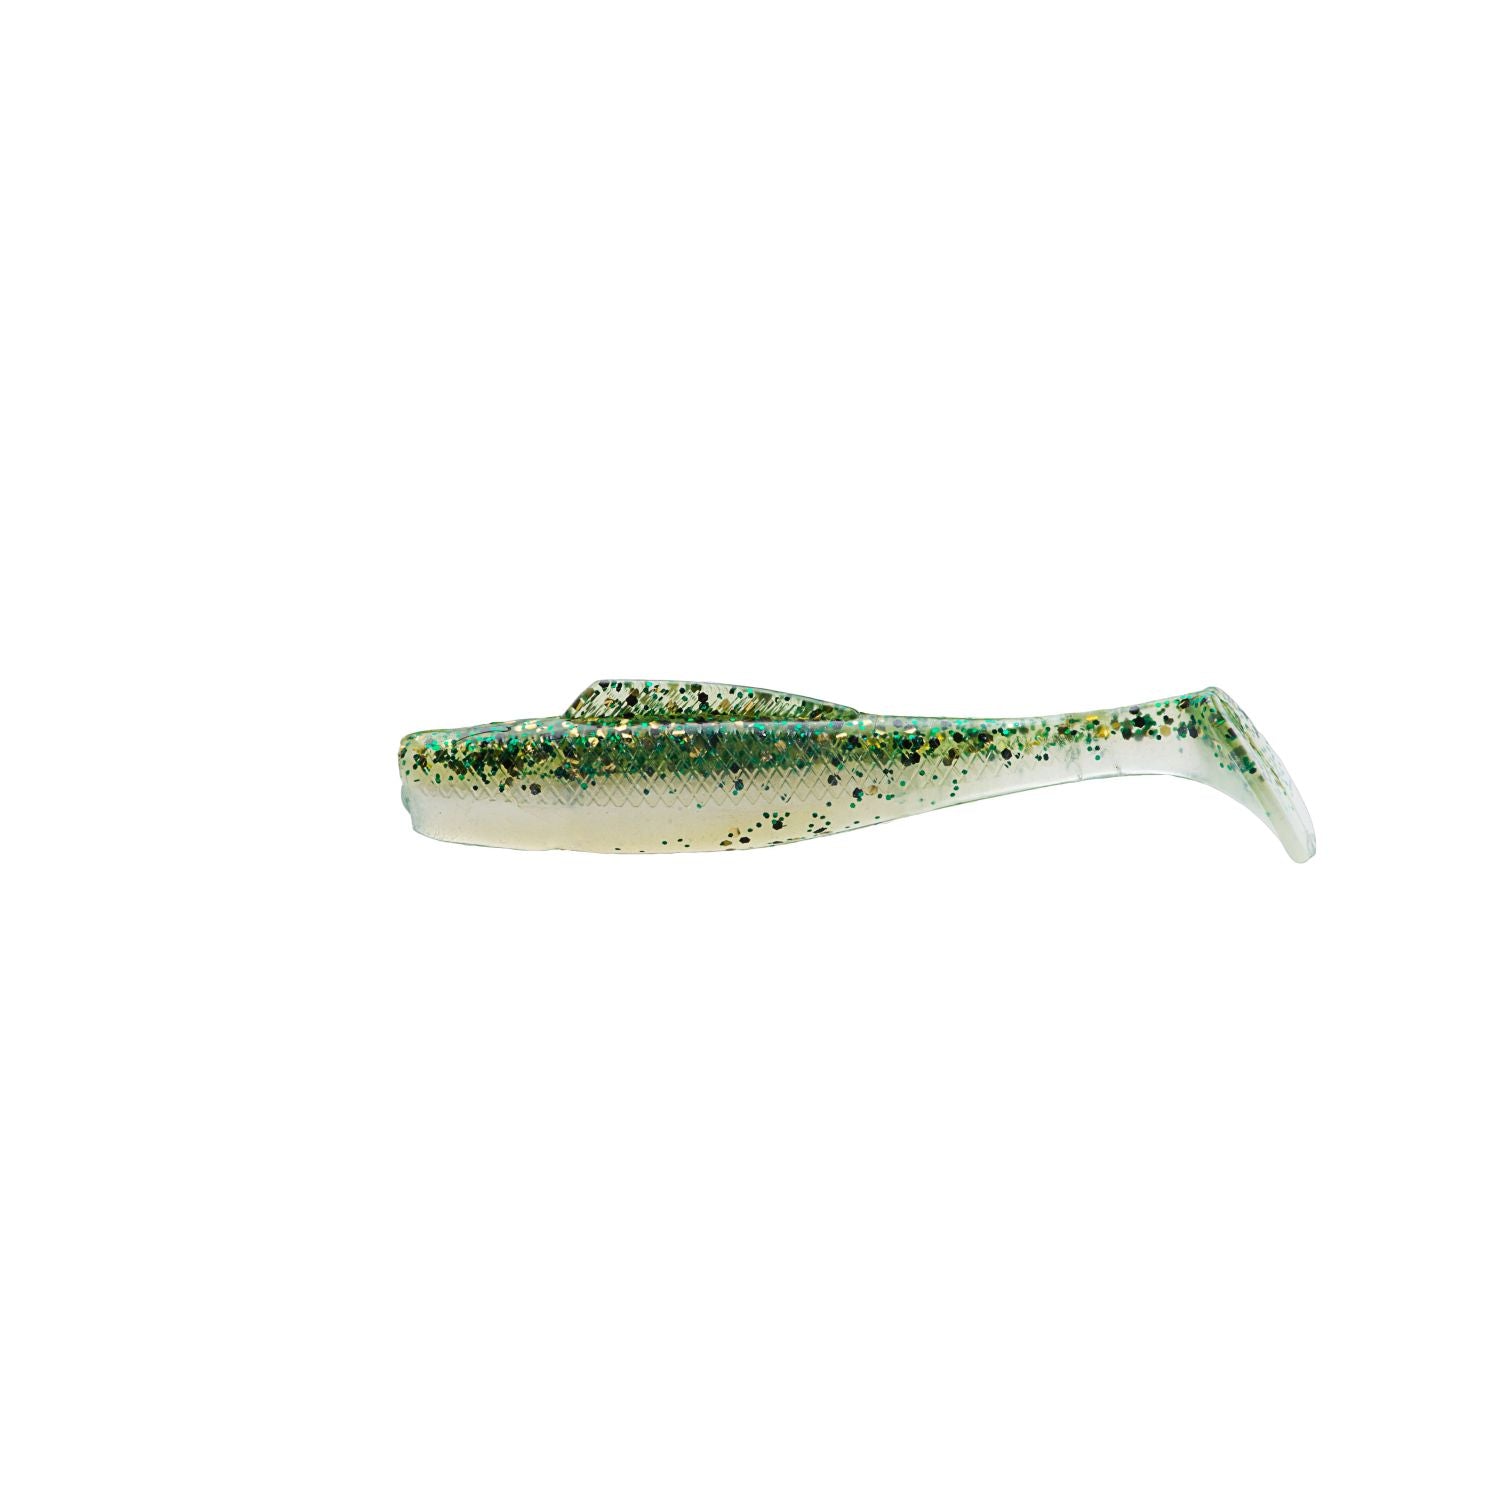 Green Mackerel 130mm 5.25inch Yo-Zuri Mag Popper F Lures